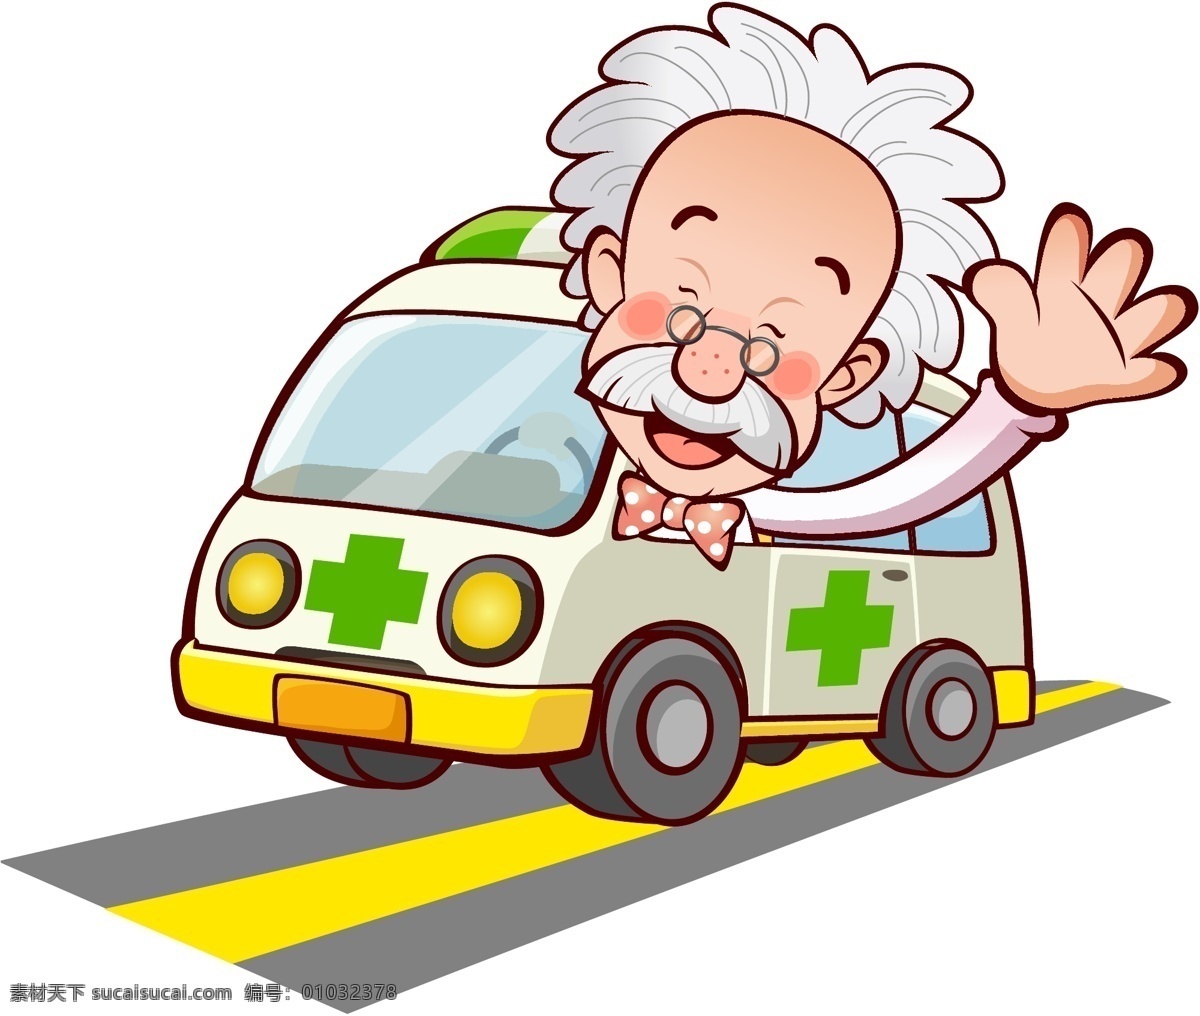 救护车 打招呼 医生 马路 道路 公路 医院 护士 老人 手绘 卡通 漫画 卡通人物 漫画人物 卡通形象 矢量人物 矢量素材 白色